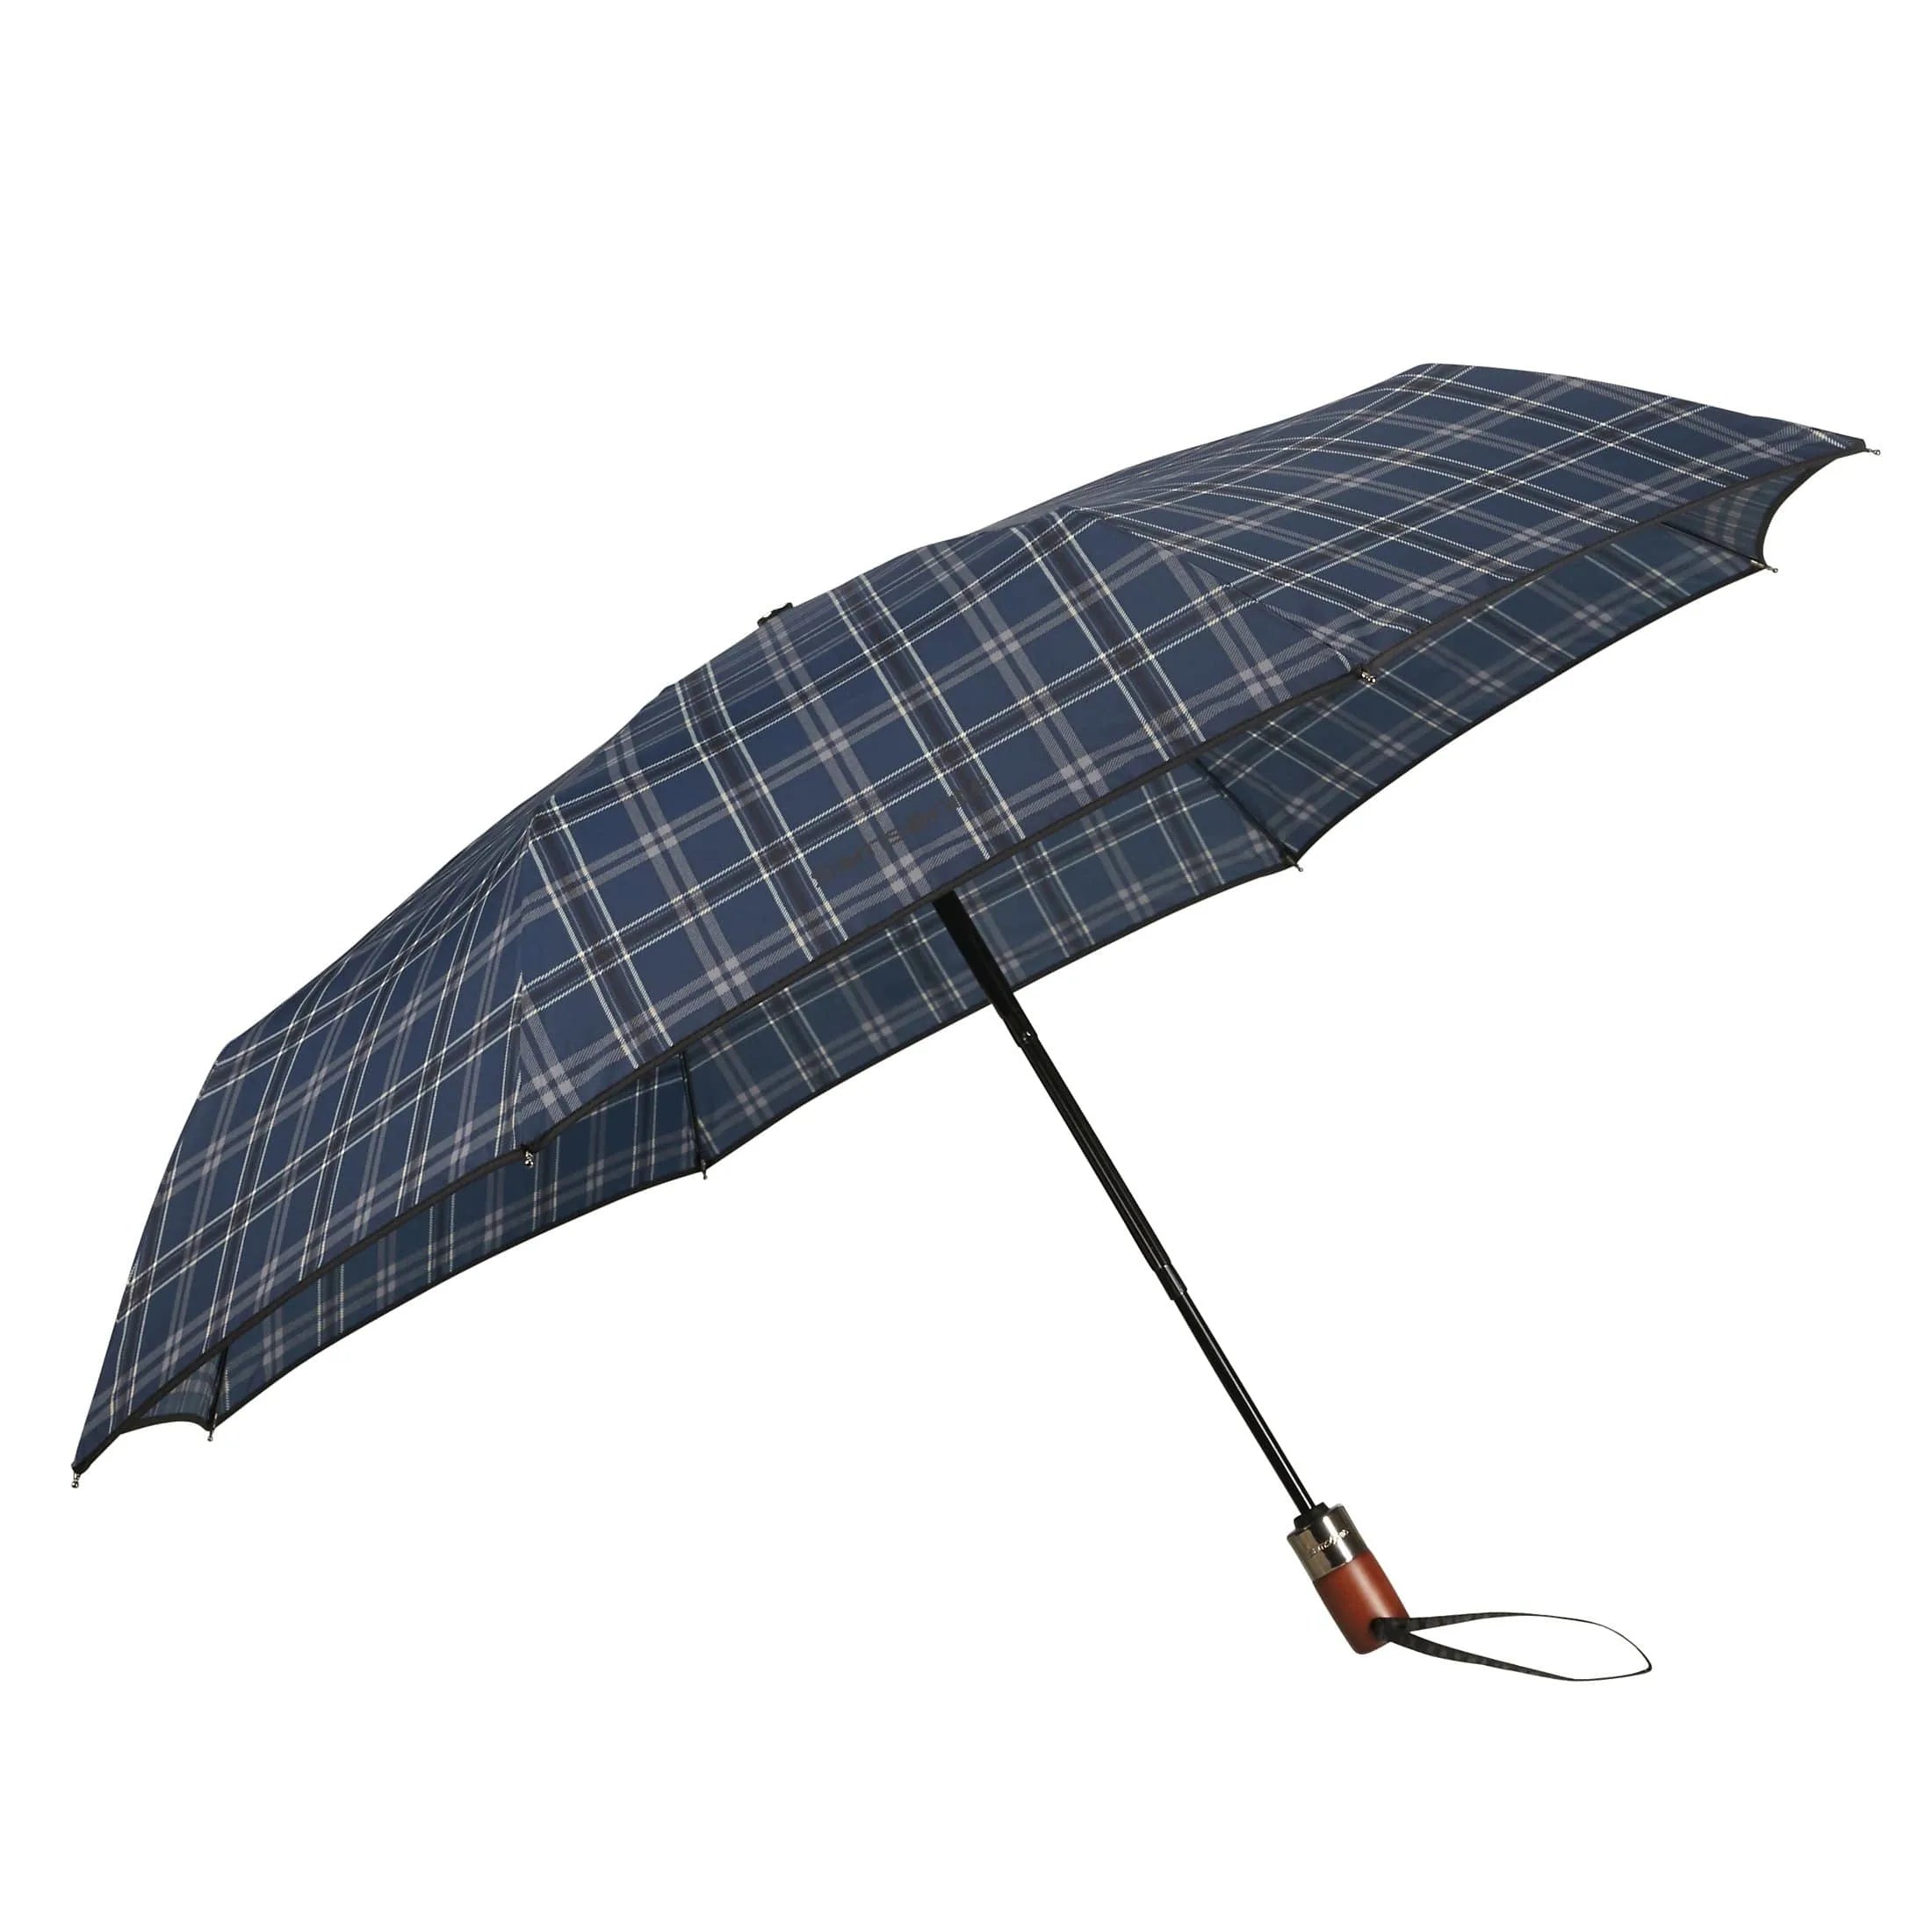 Samsonite Umbrella Wood Classic S umbrella 27 cm - black